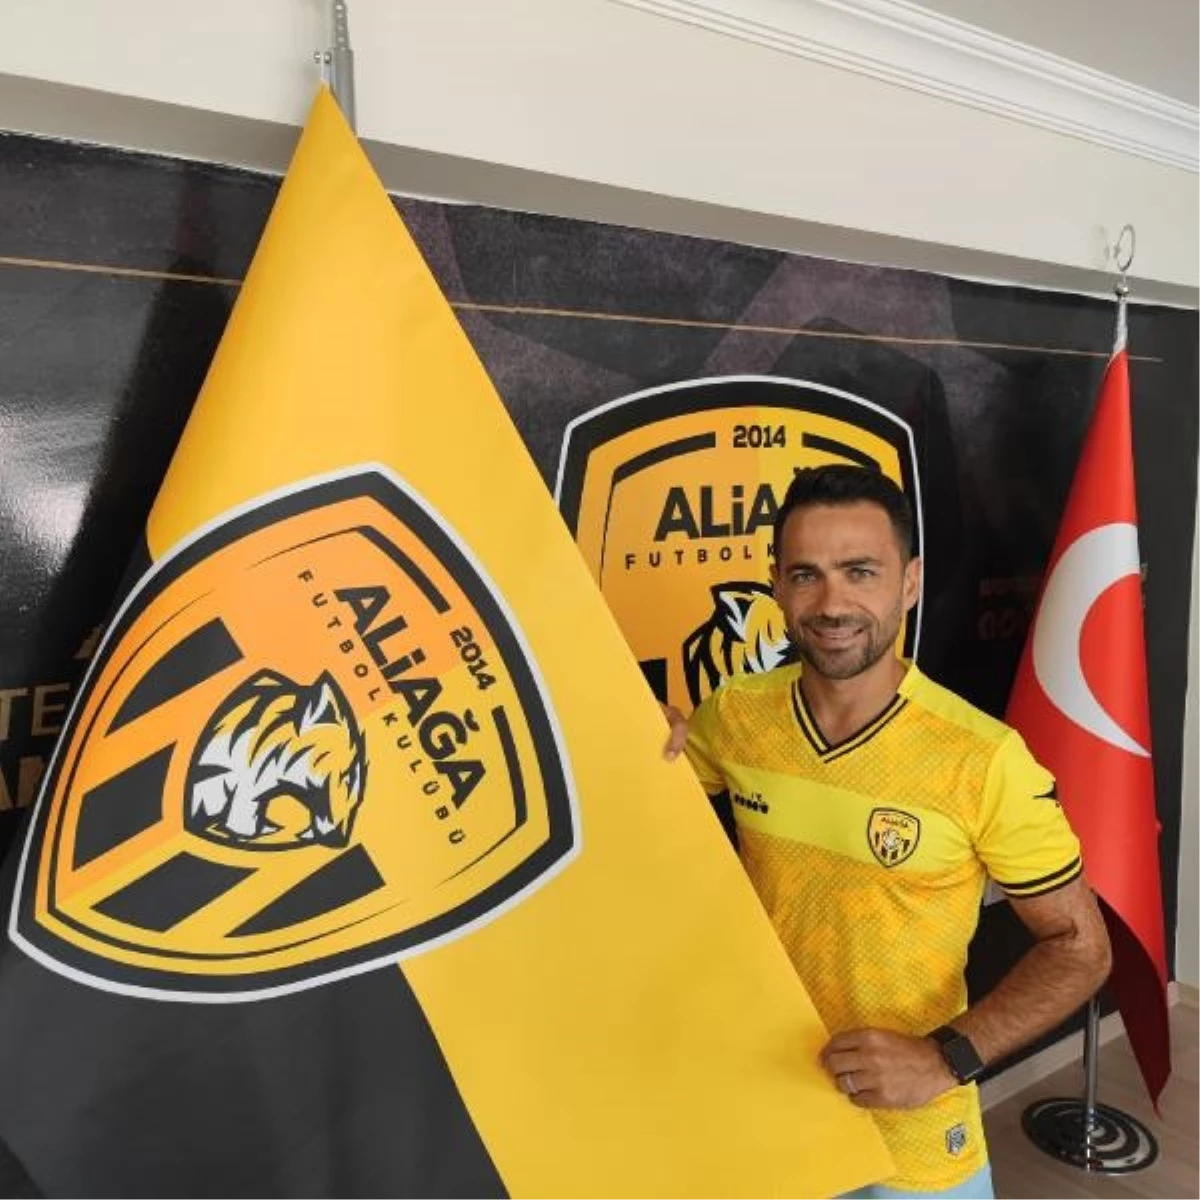 Aliağa Futbol Kulübü'nde ekip kaptanı Mithat Yaşar ile kontrat yenilendi